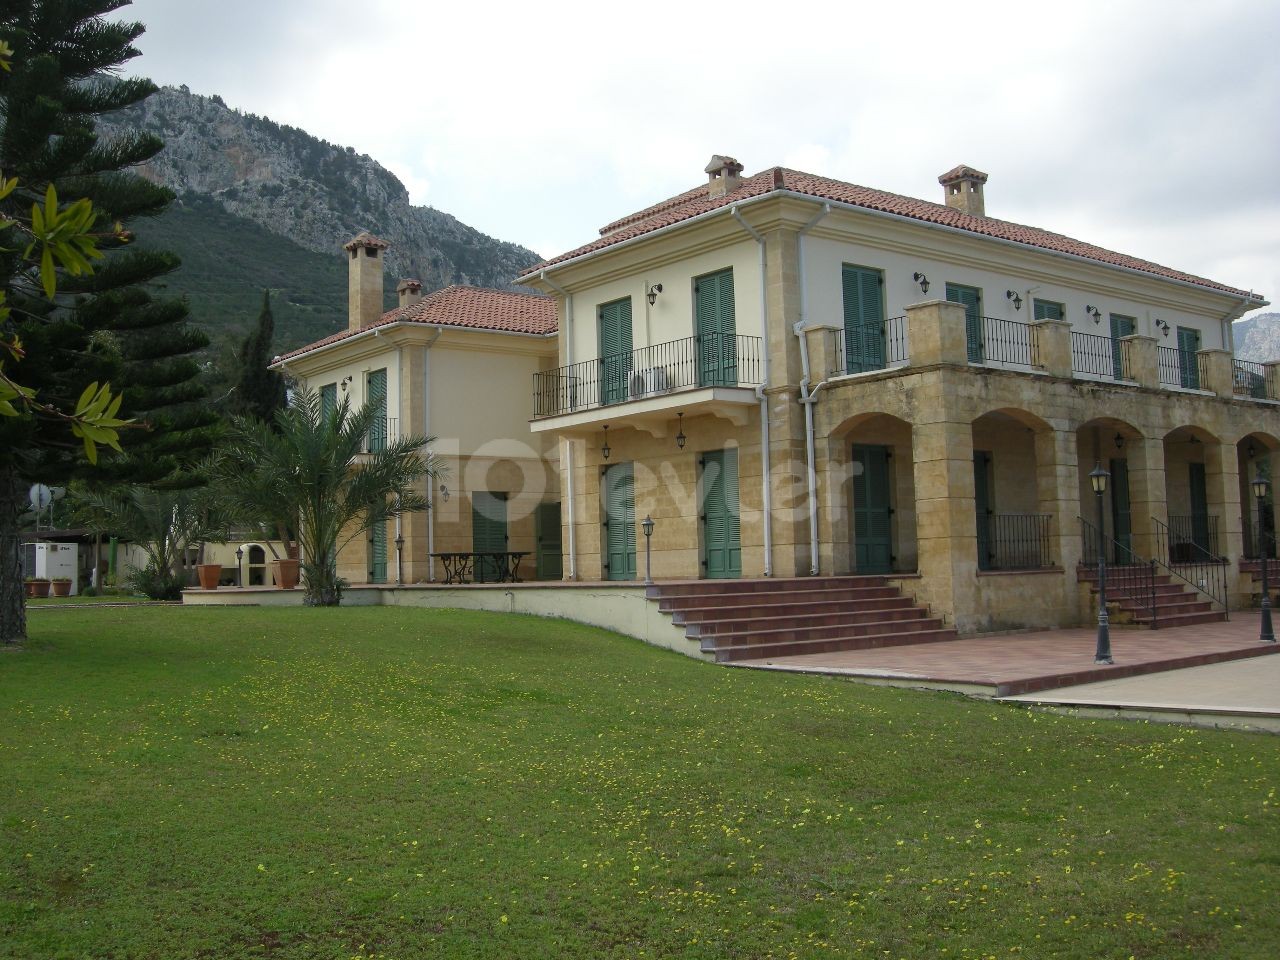 Kyrenia /Catalkoy Bereich in der Grünanlage im Garten einer großen Villa